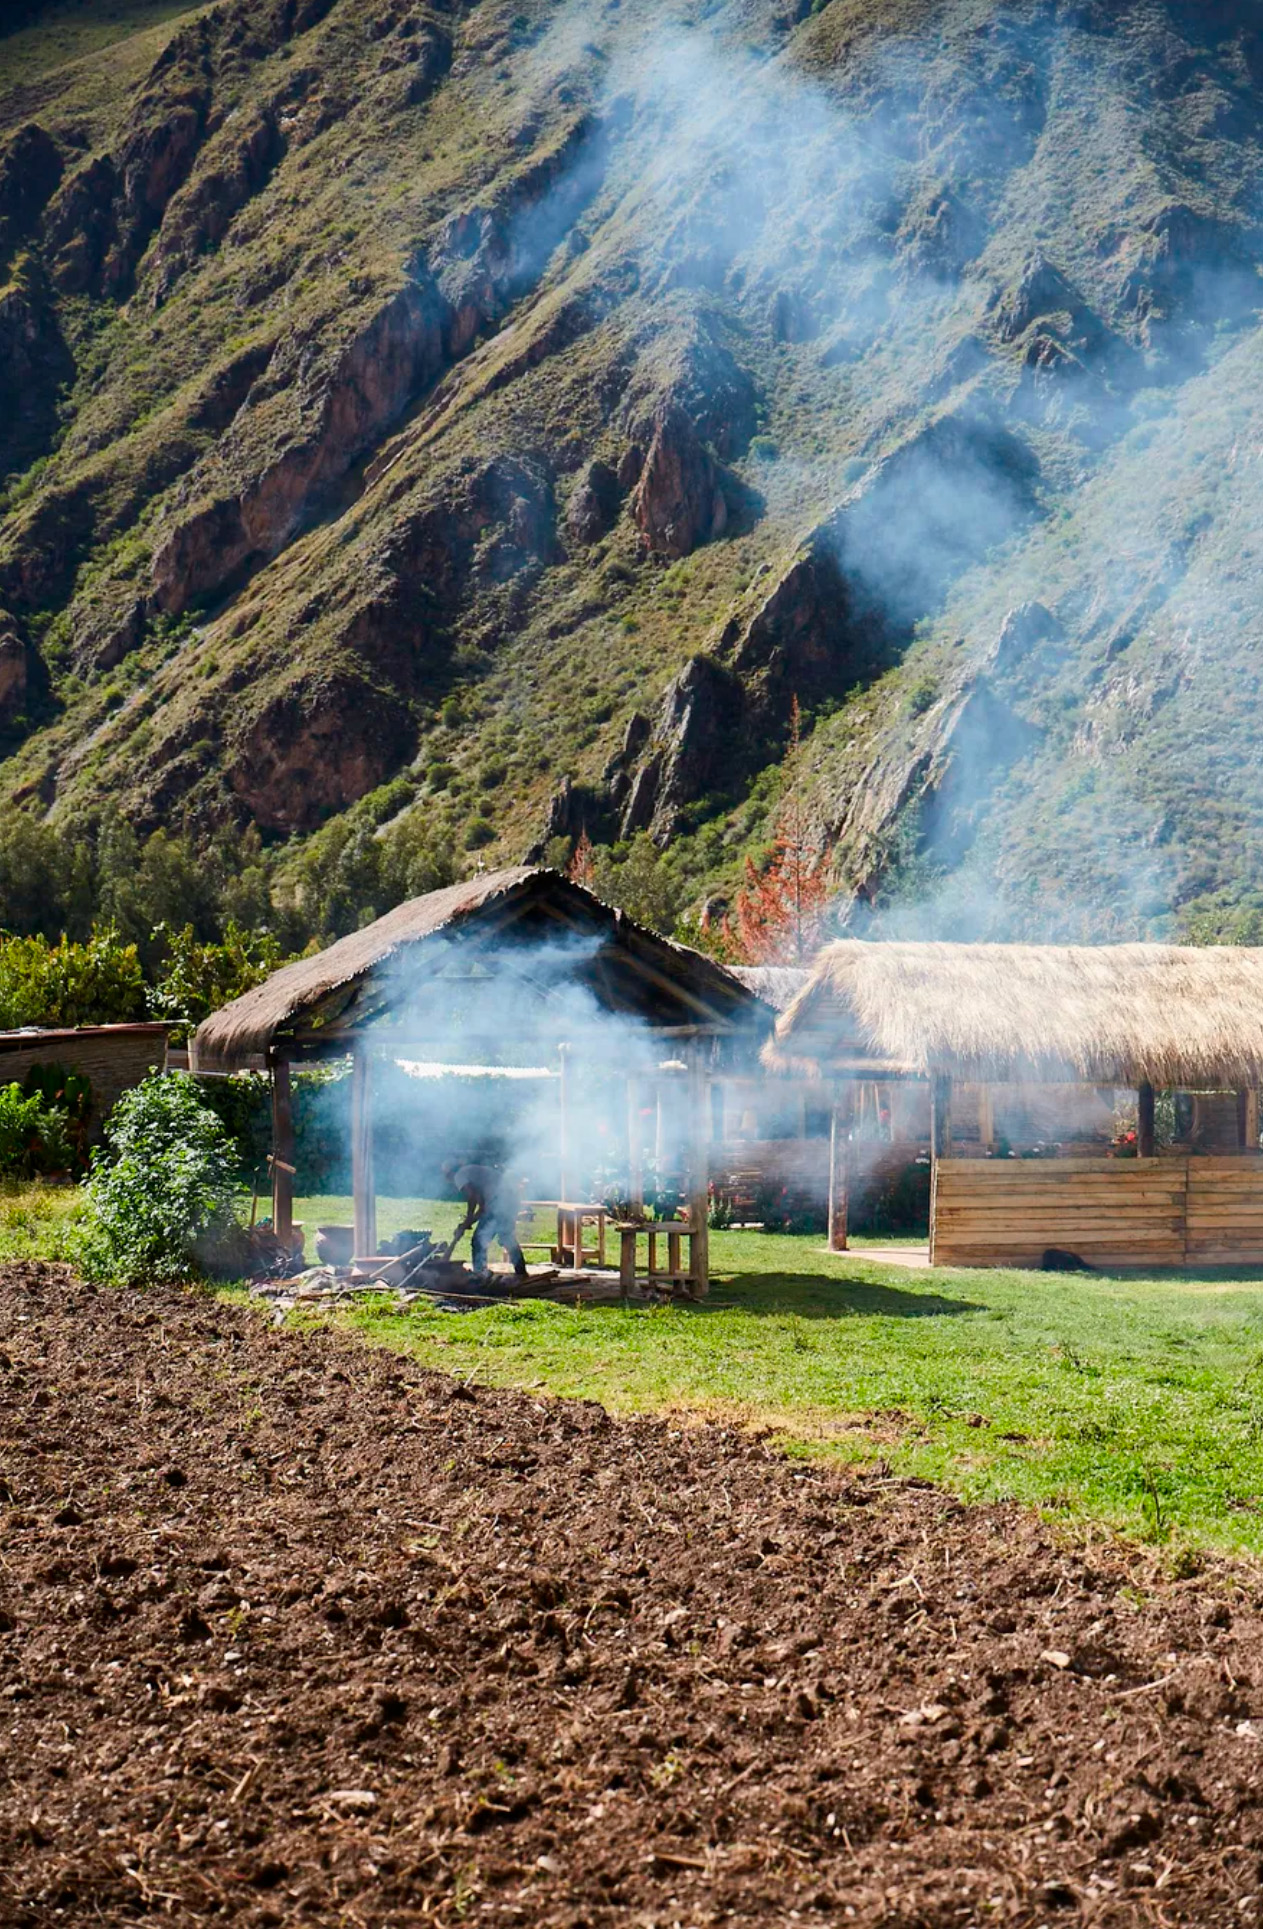 La cocina ancestral en horno de barro conocida como pachamanca se ofrece a los huéspedes en El Albergue Ollantaytambo, como parte del creciente esfuerzo de la región para mostrar las tradiciones de comidas y bebidas andinas a un público más amplio